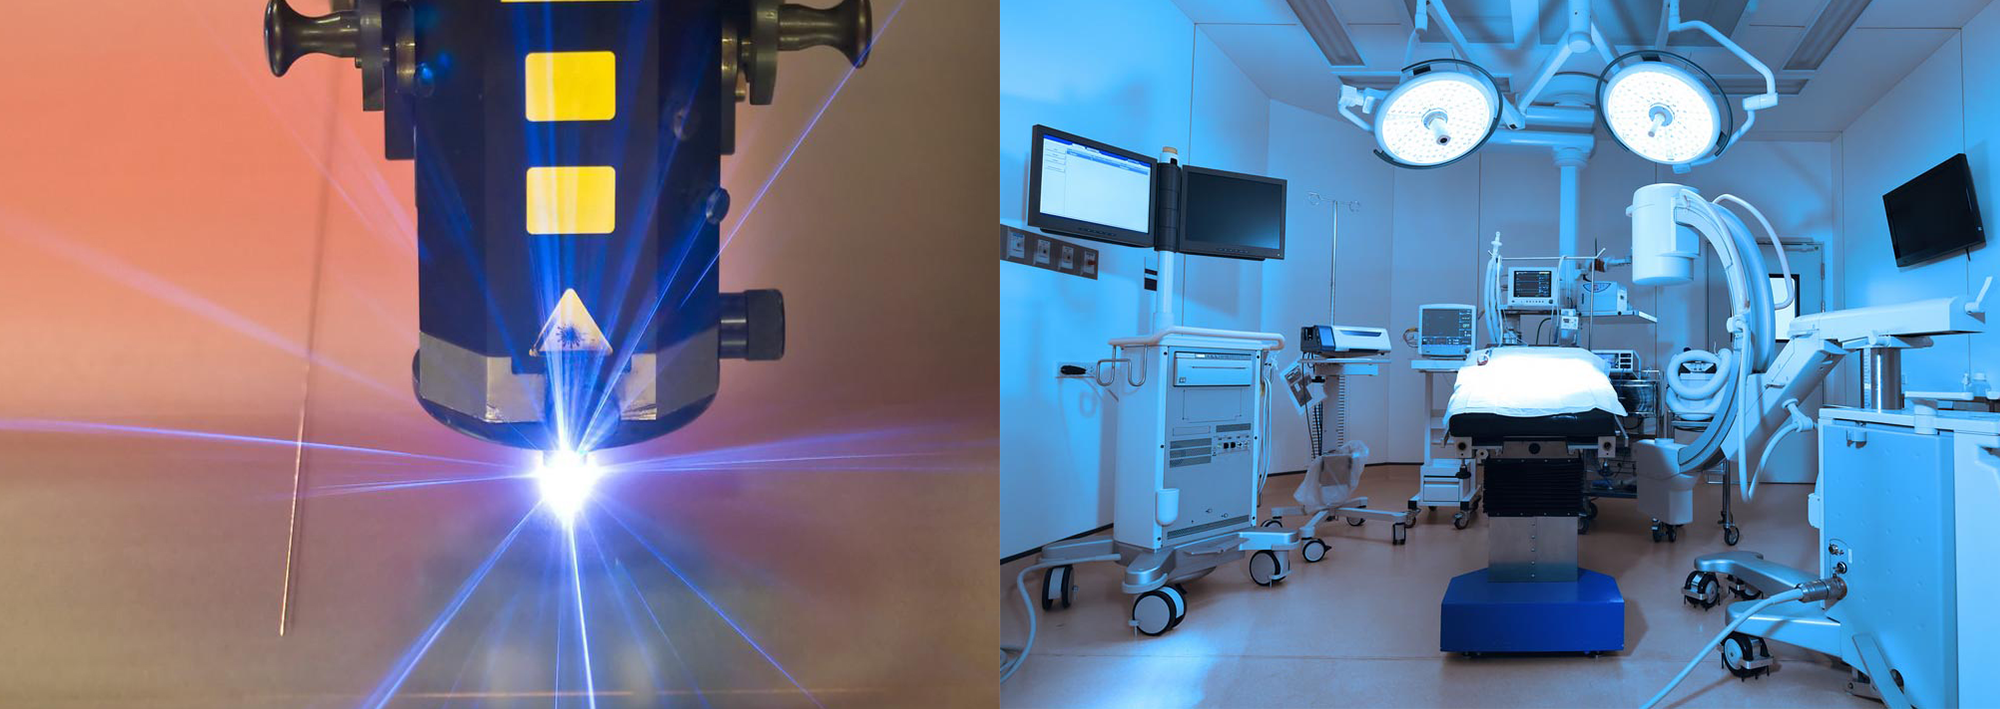 医疗器械行业激光设备解决方案